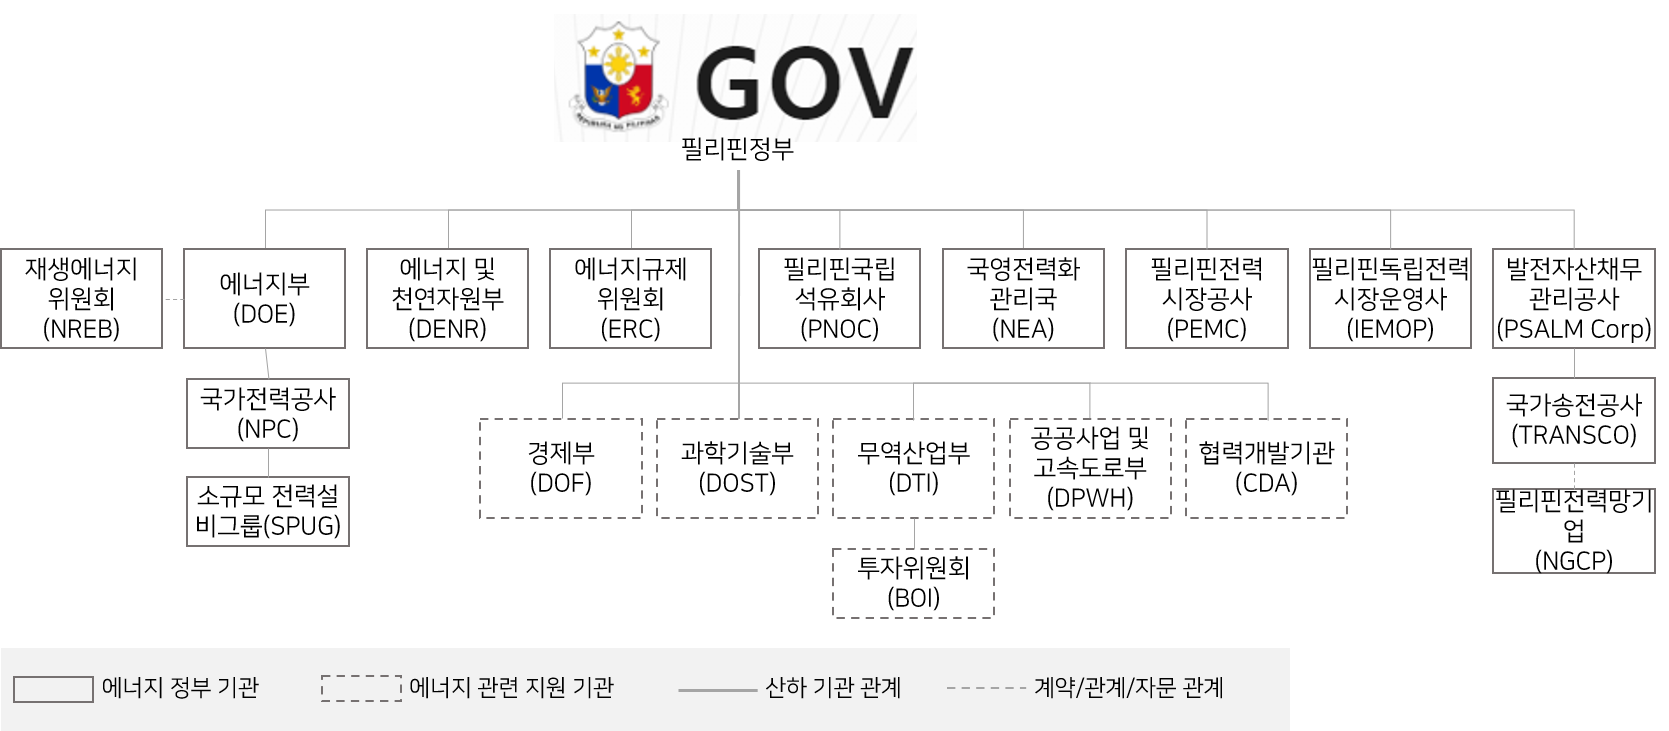 필리핀 에너지 정부 조직도